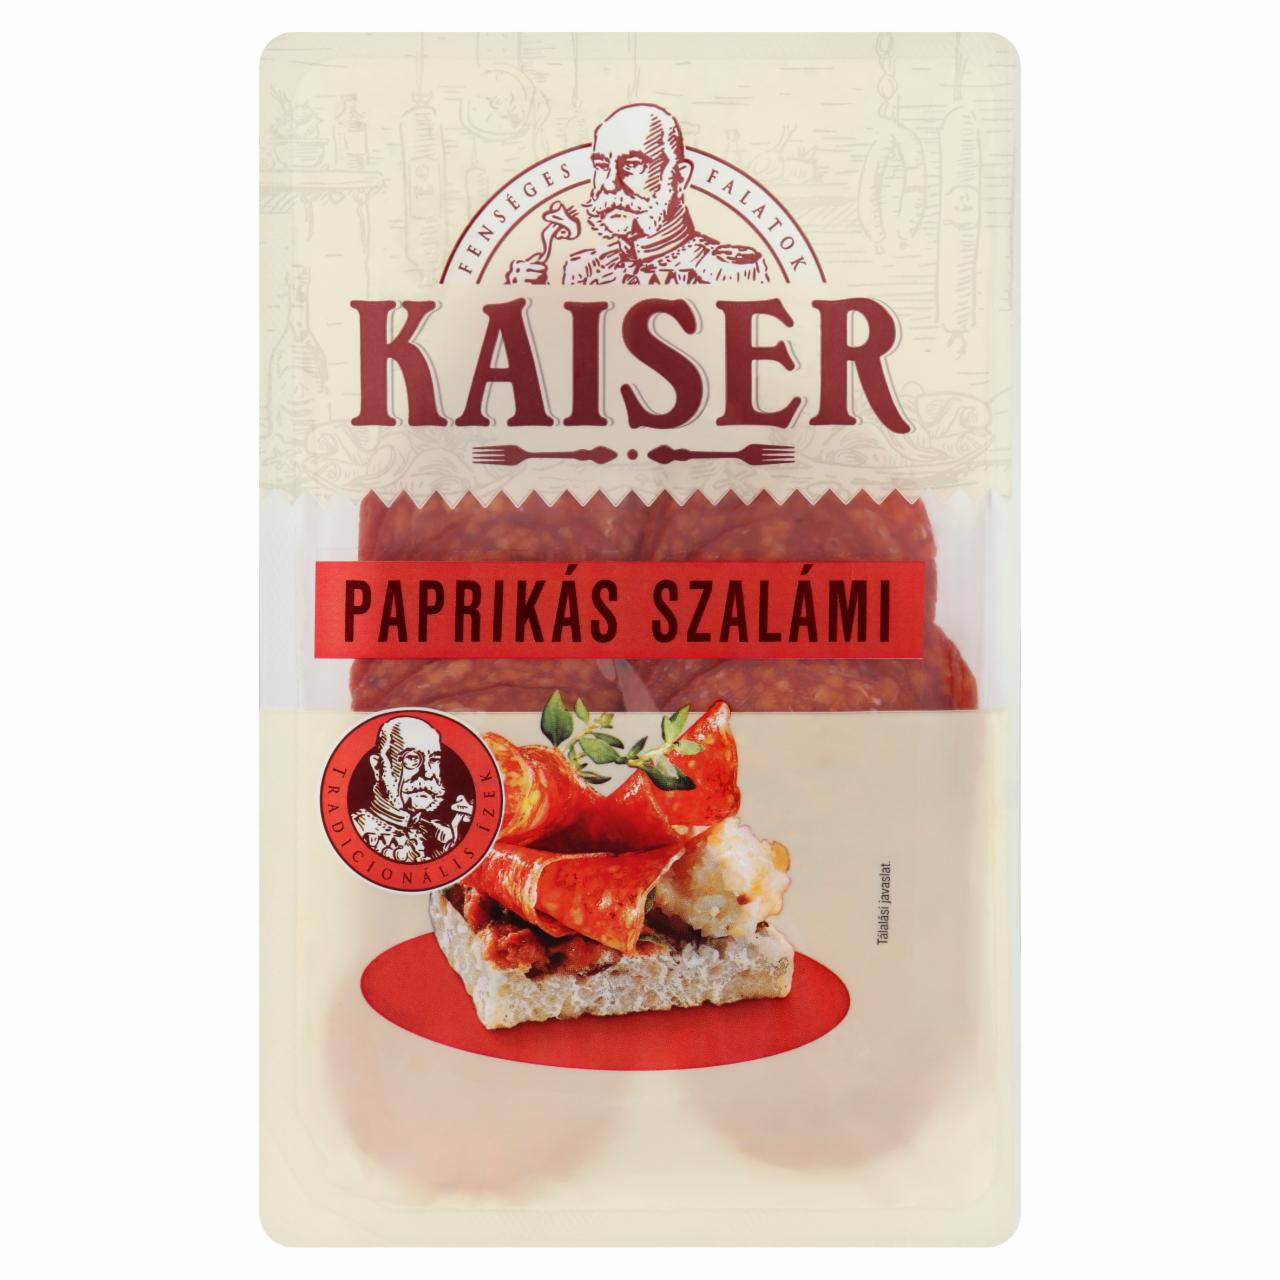 Képek - Kaiser paprikás sertés szalámi 75 g